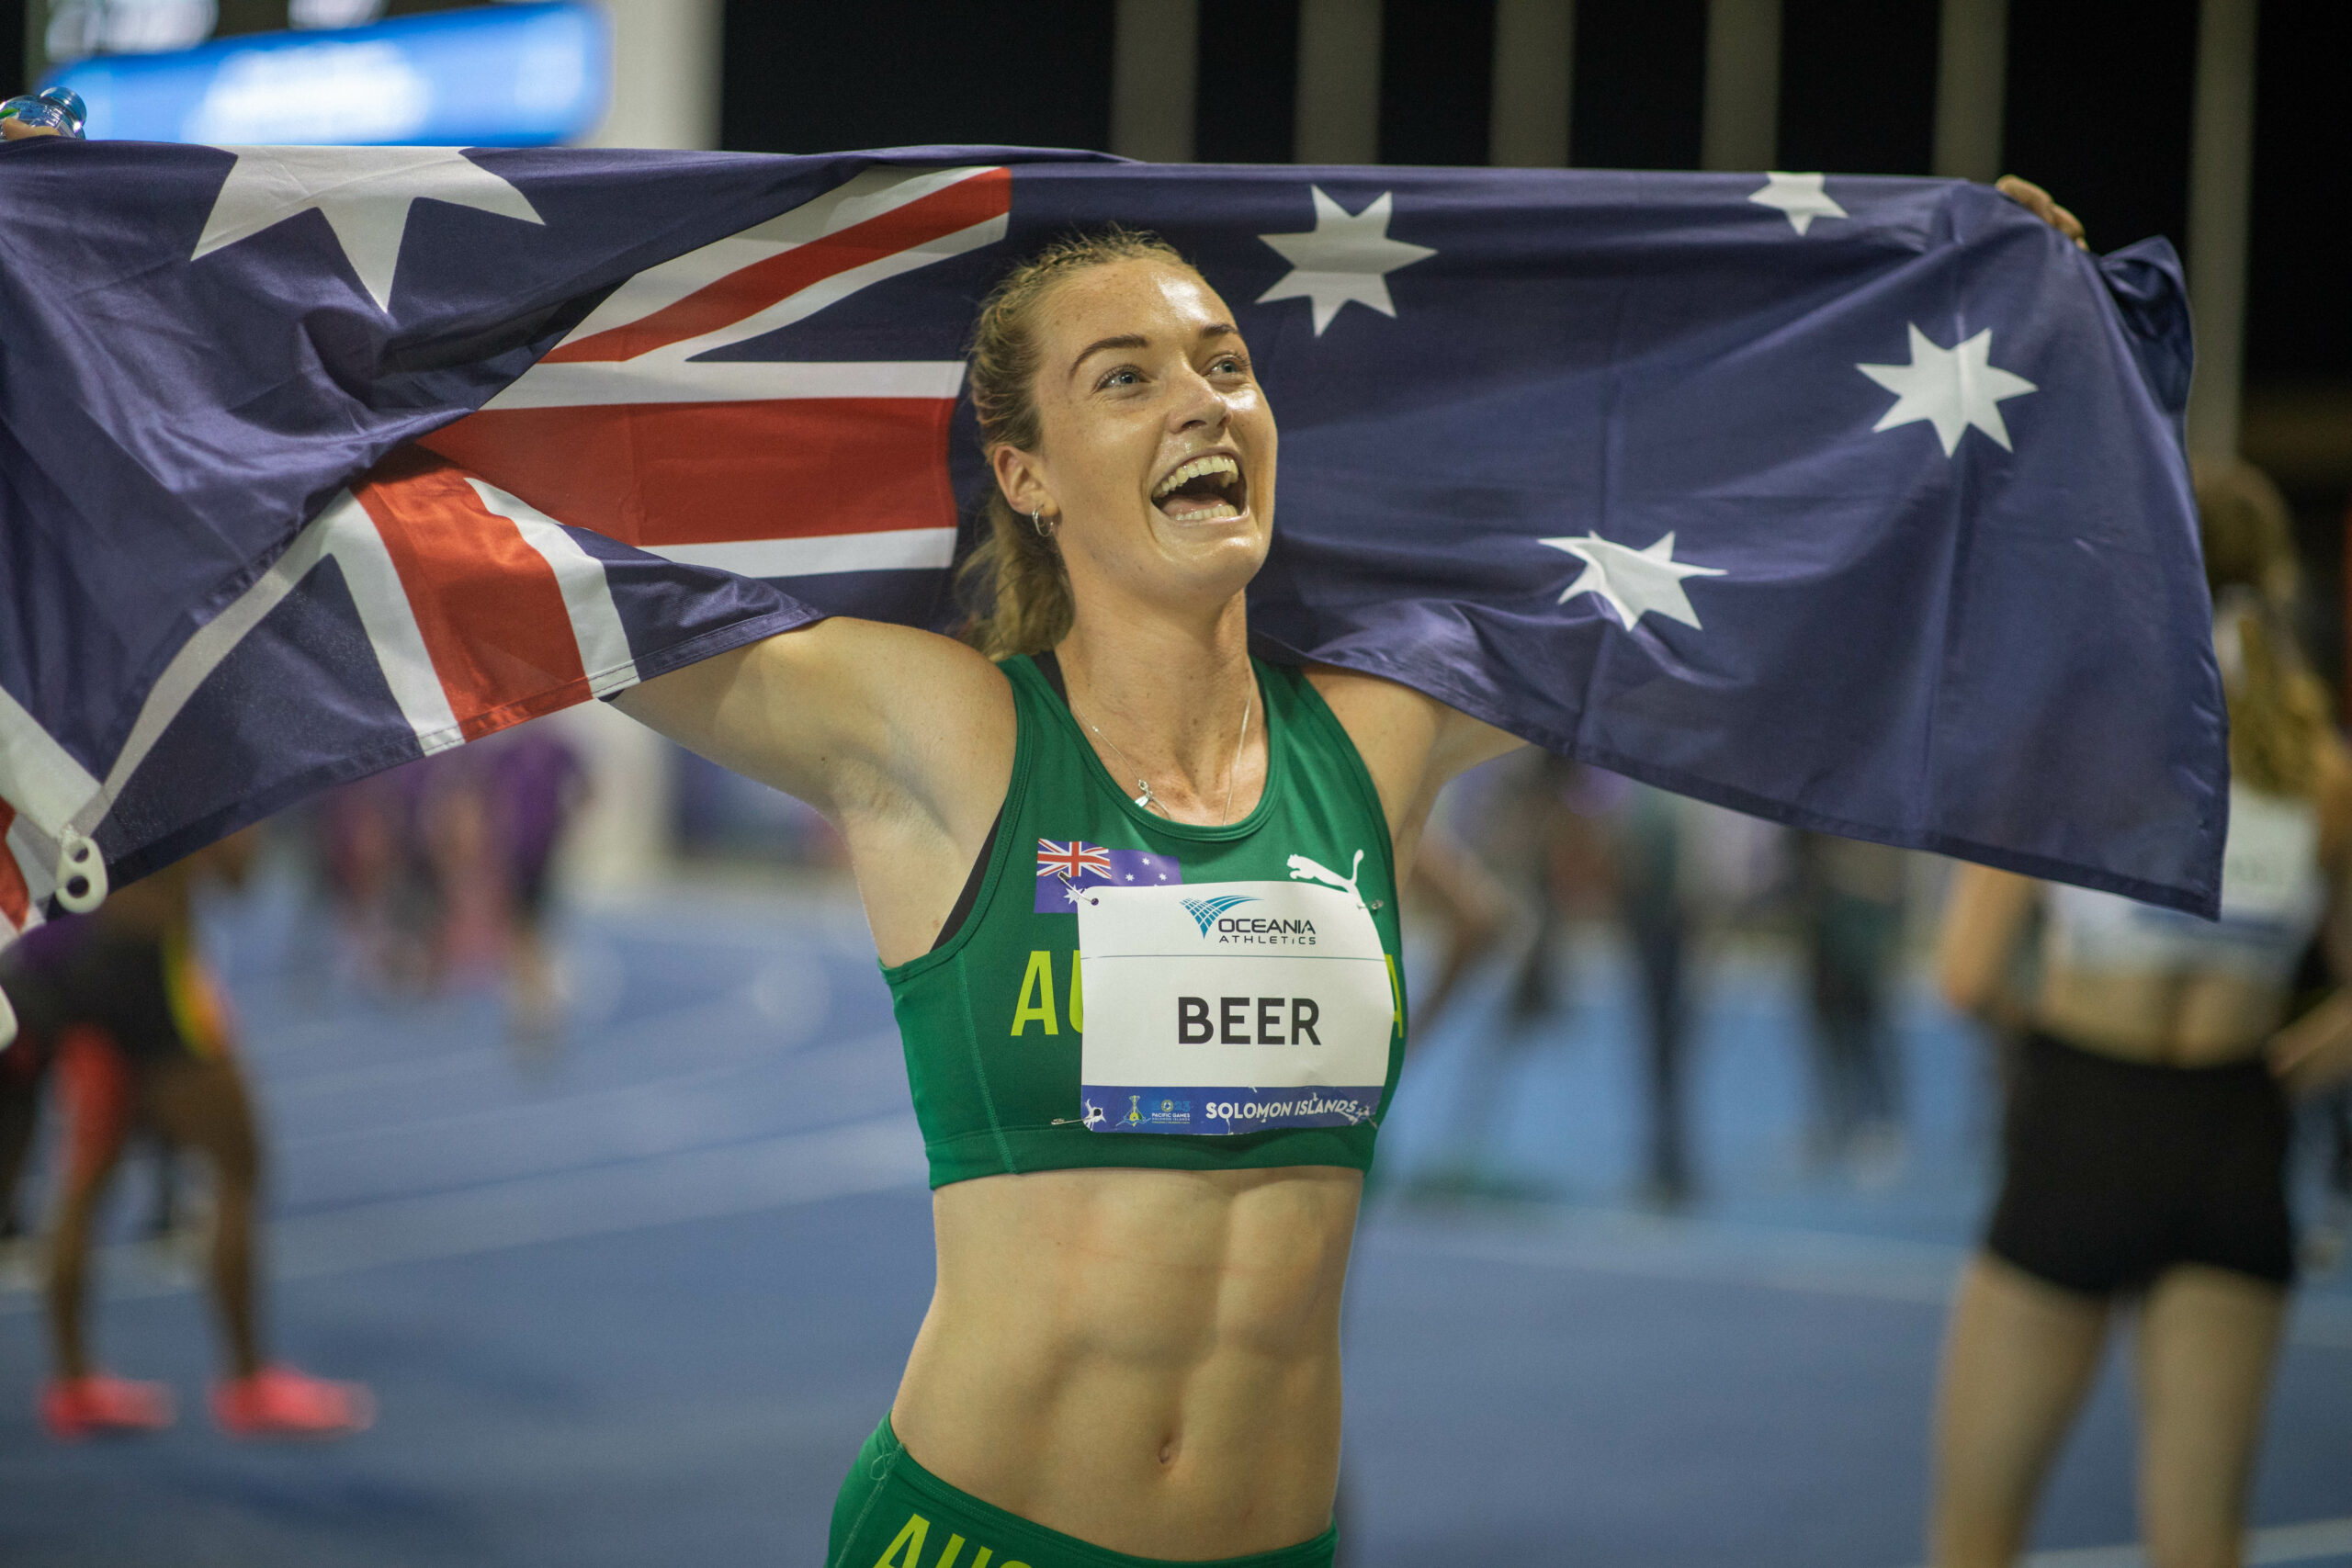 An Australian runner winning a race